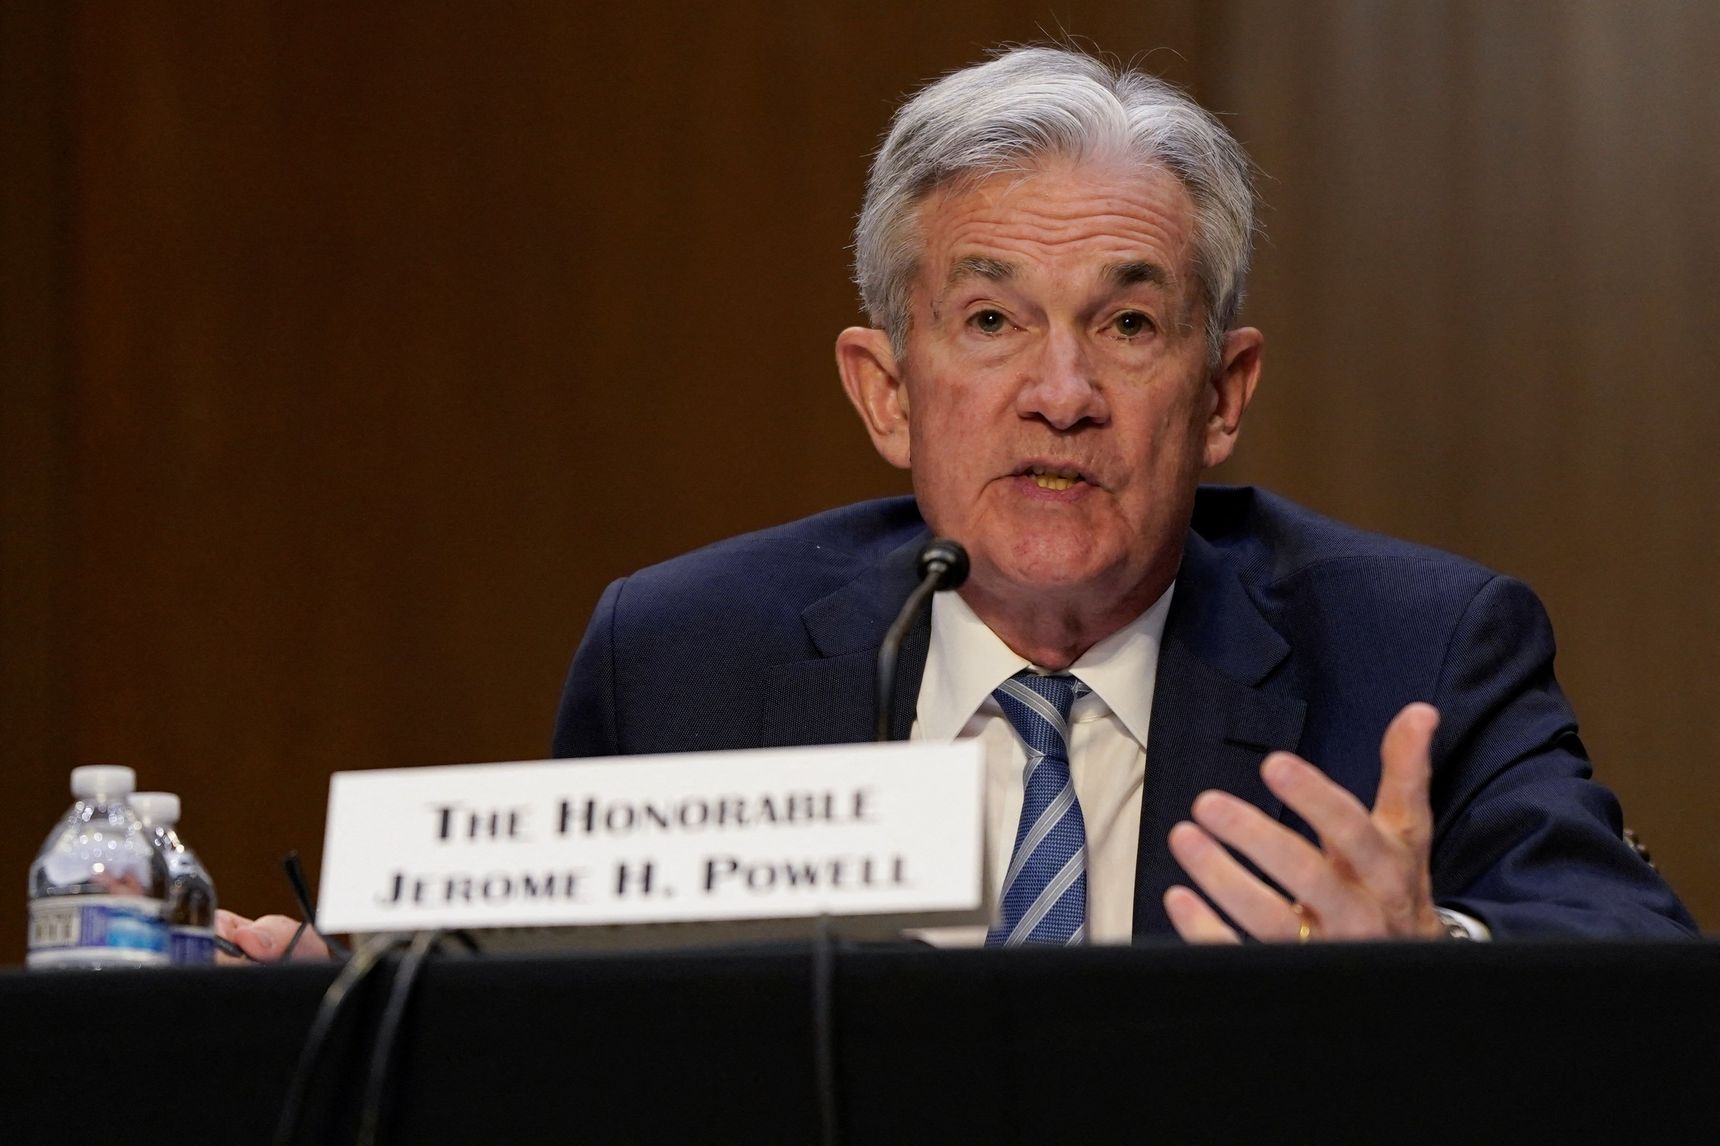 Tin Kinh tế: Nhiều nhà kinh tế lo ngại rằng Fed đang thắt chặt chính sách quá mức